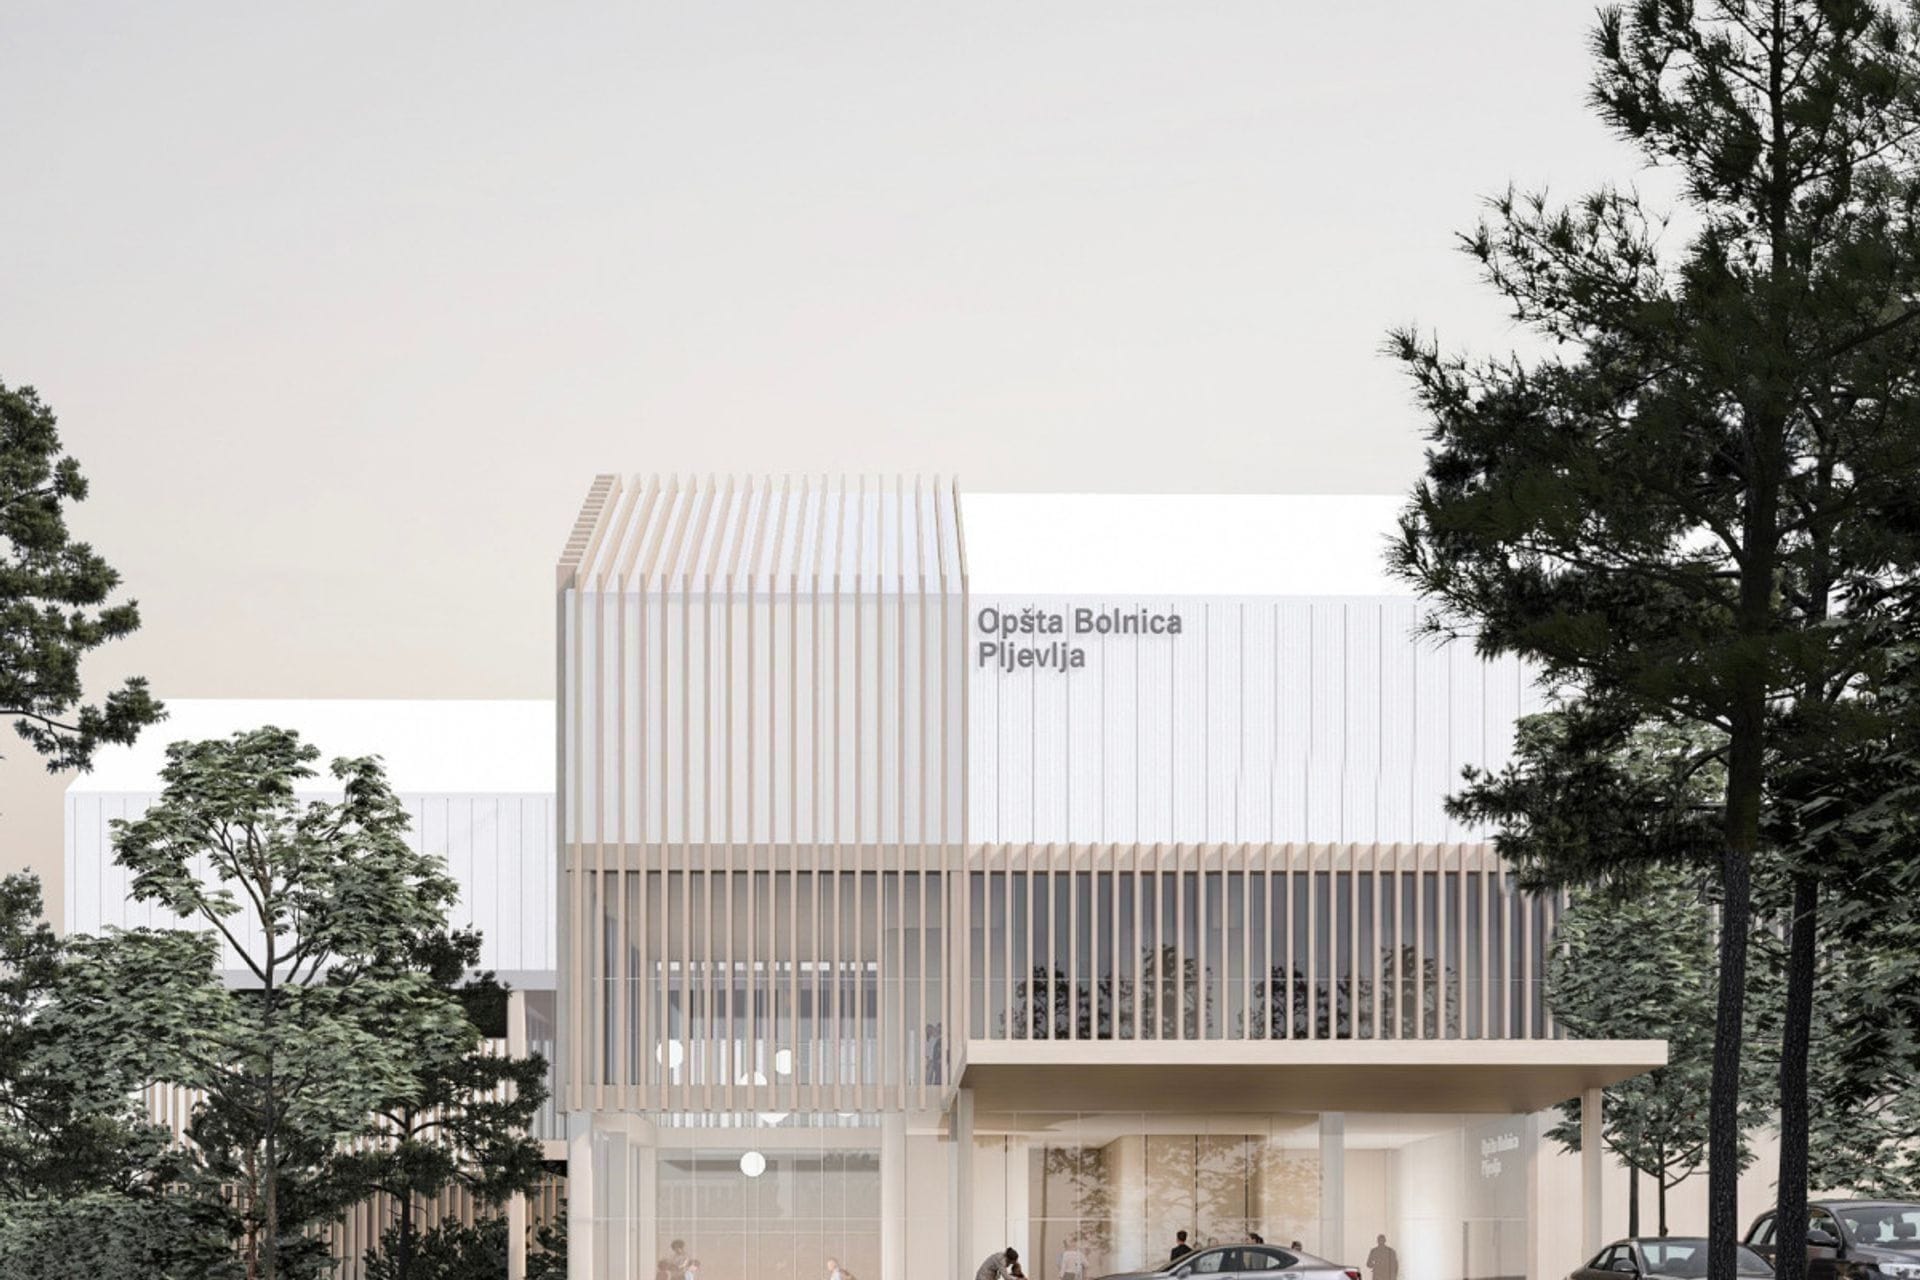 Rezultati međunarodnog Konkursa za idejno arhitektonsko rješenje objekta opšte bolnice u Pljevljima